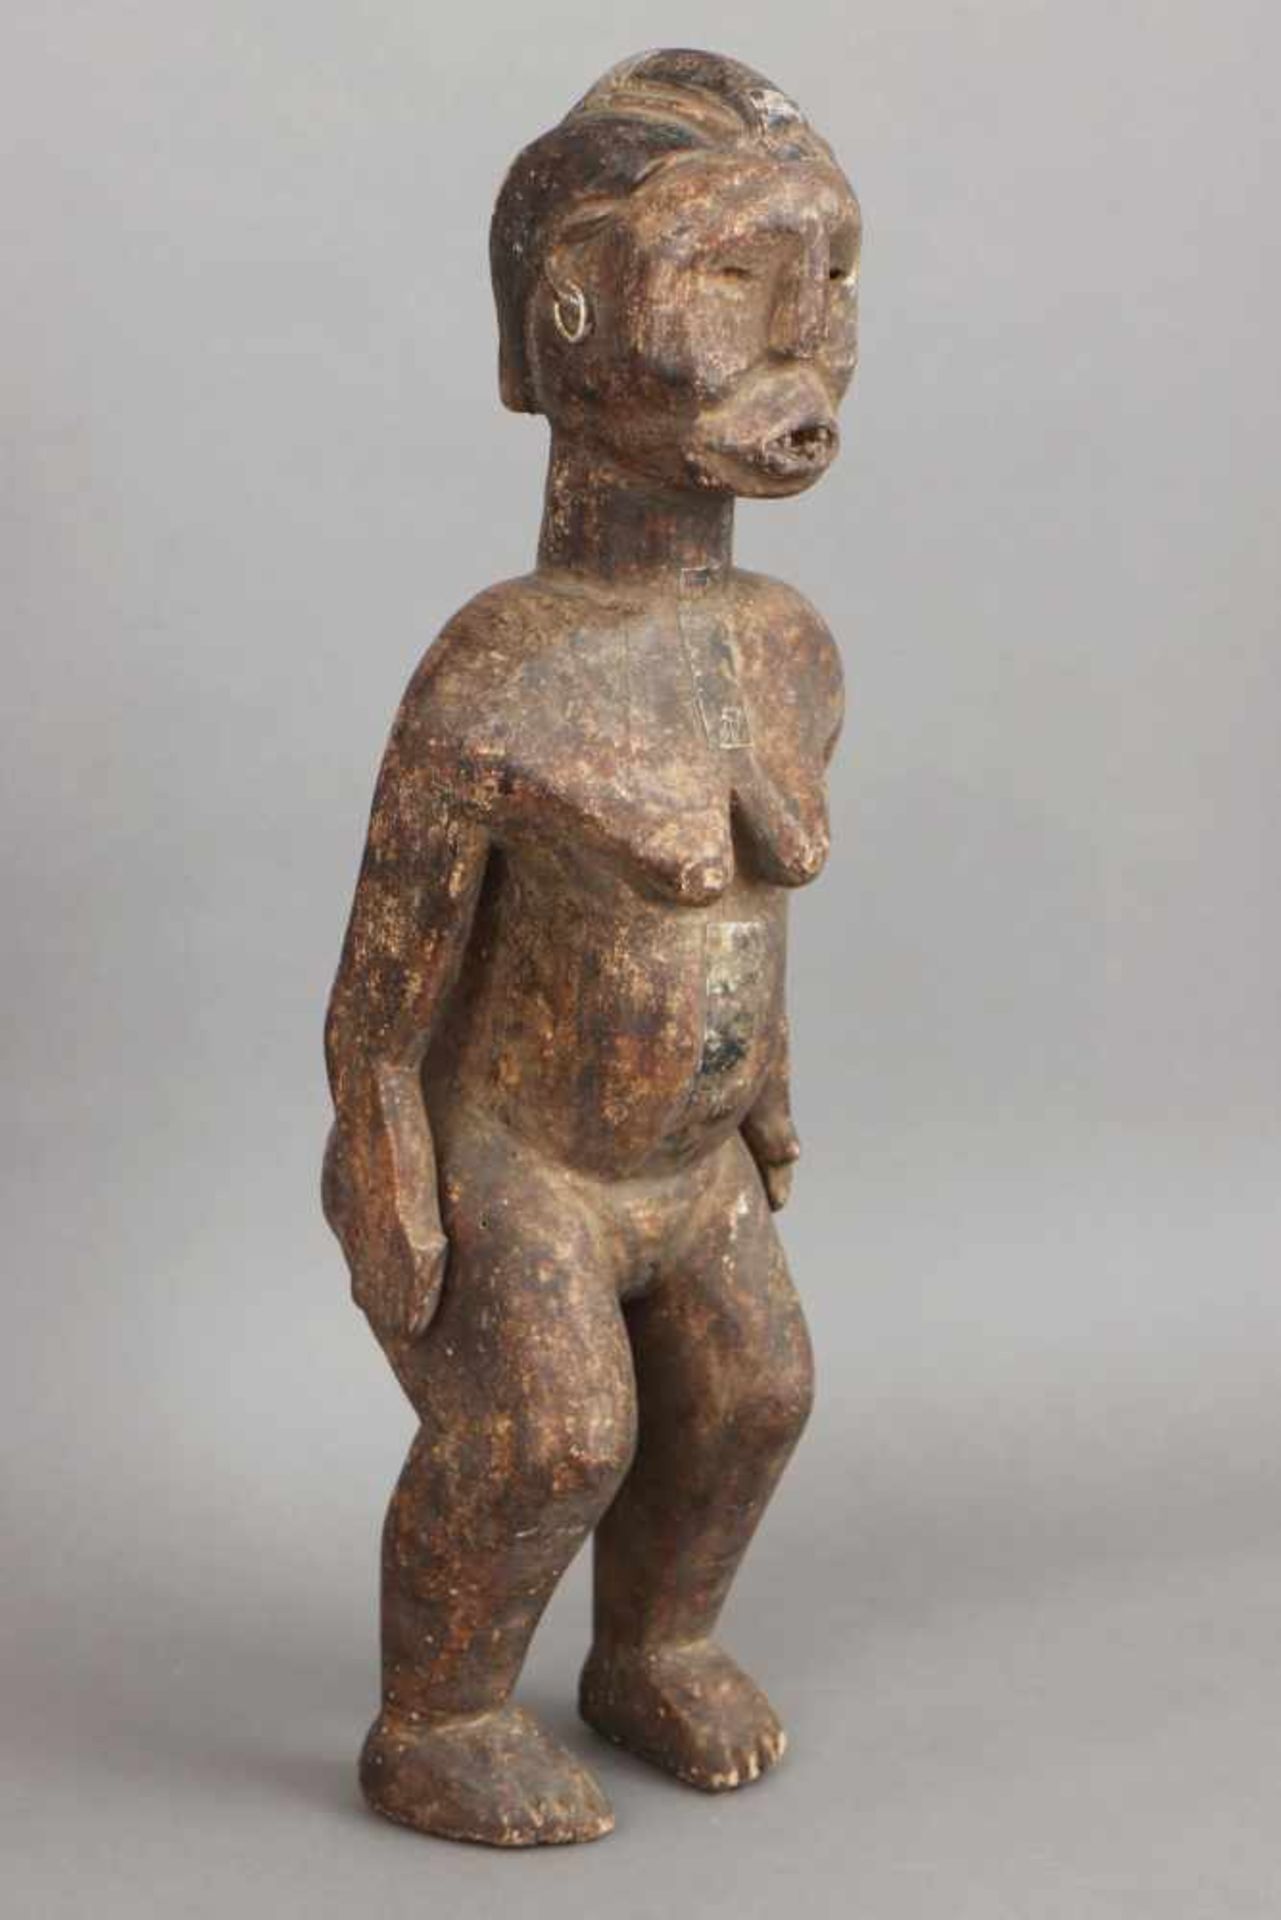 Afrikanische Ritual-/Ahnenfigur Holz, geschnitzt und dunkel patiniert, Metallbeschläge, stehende - Bild 2 aus 4